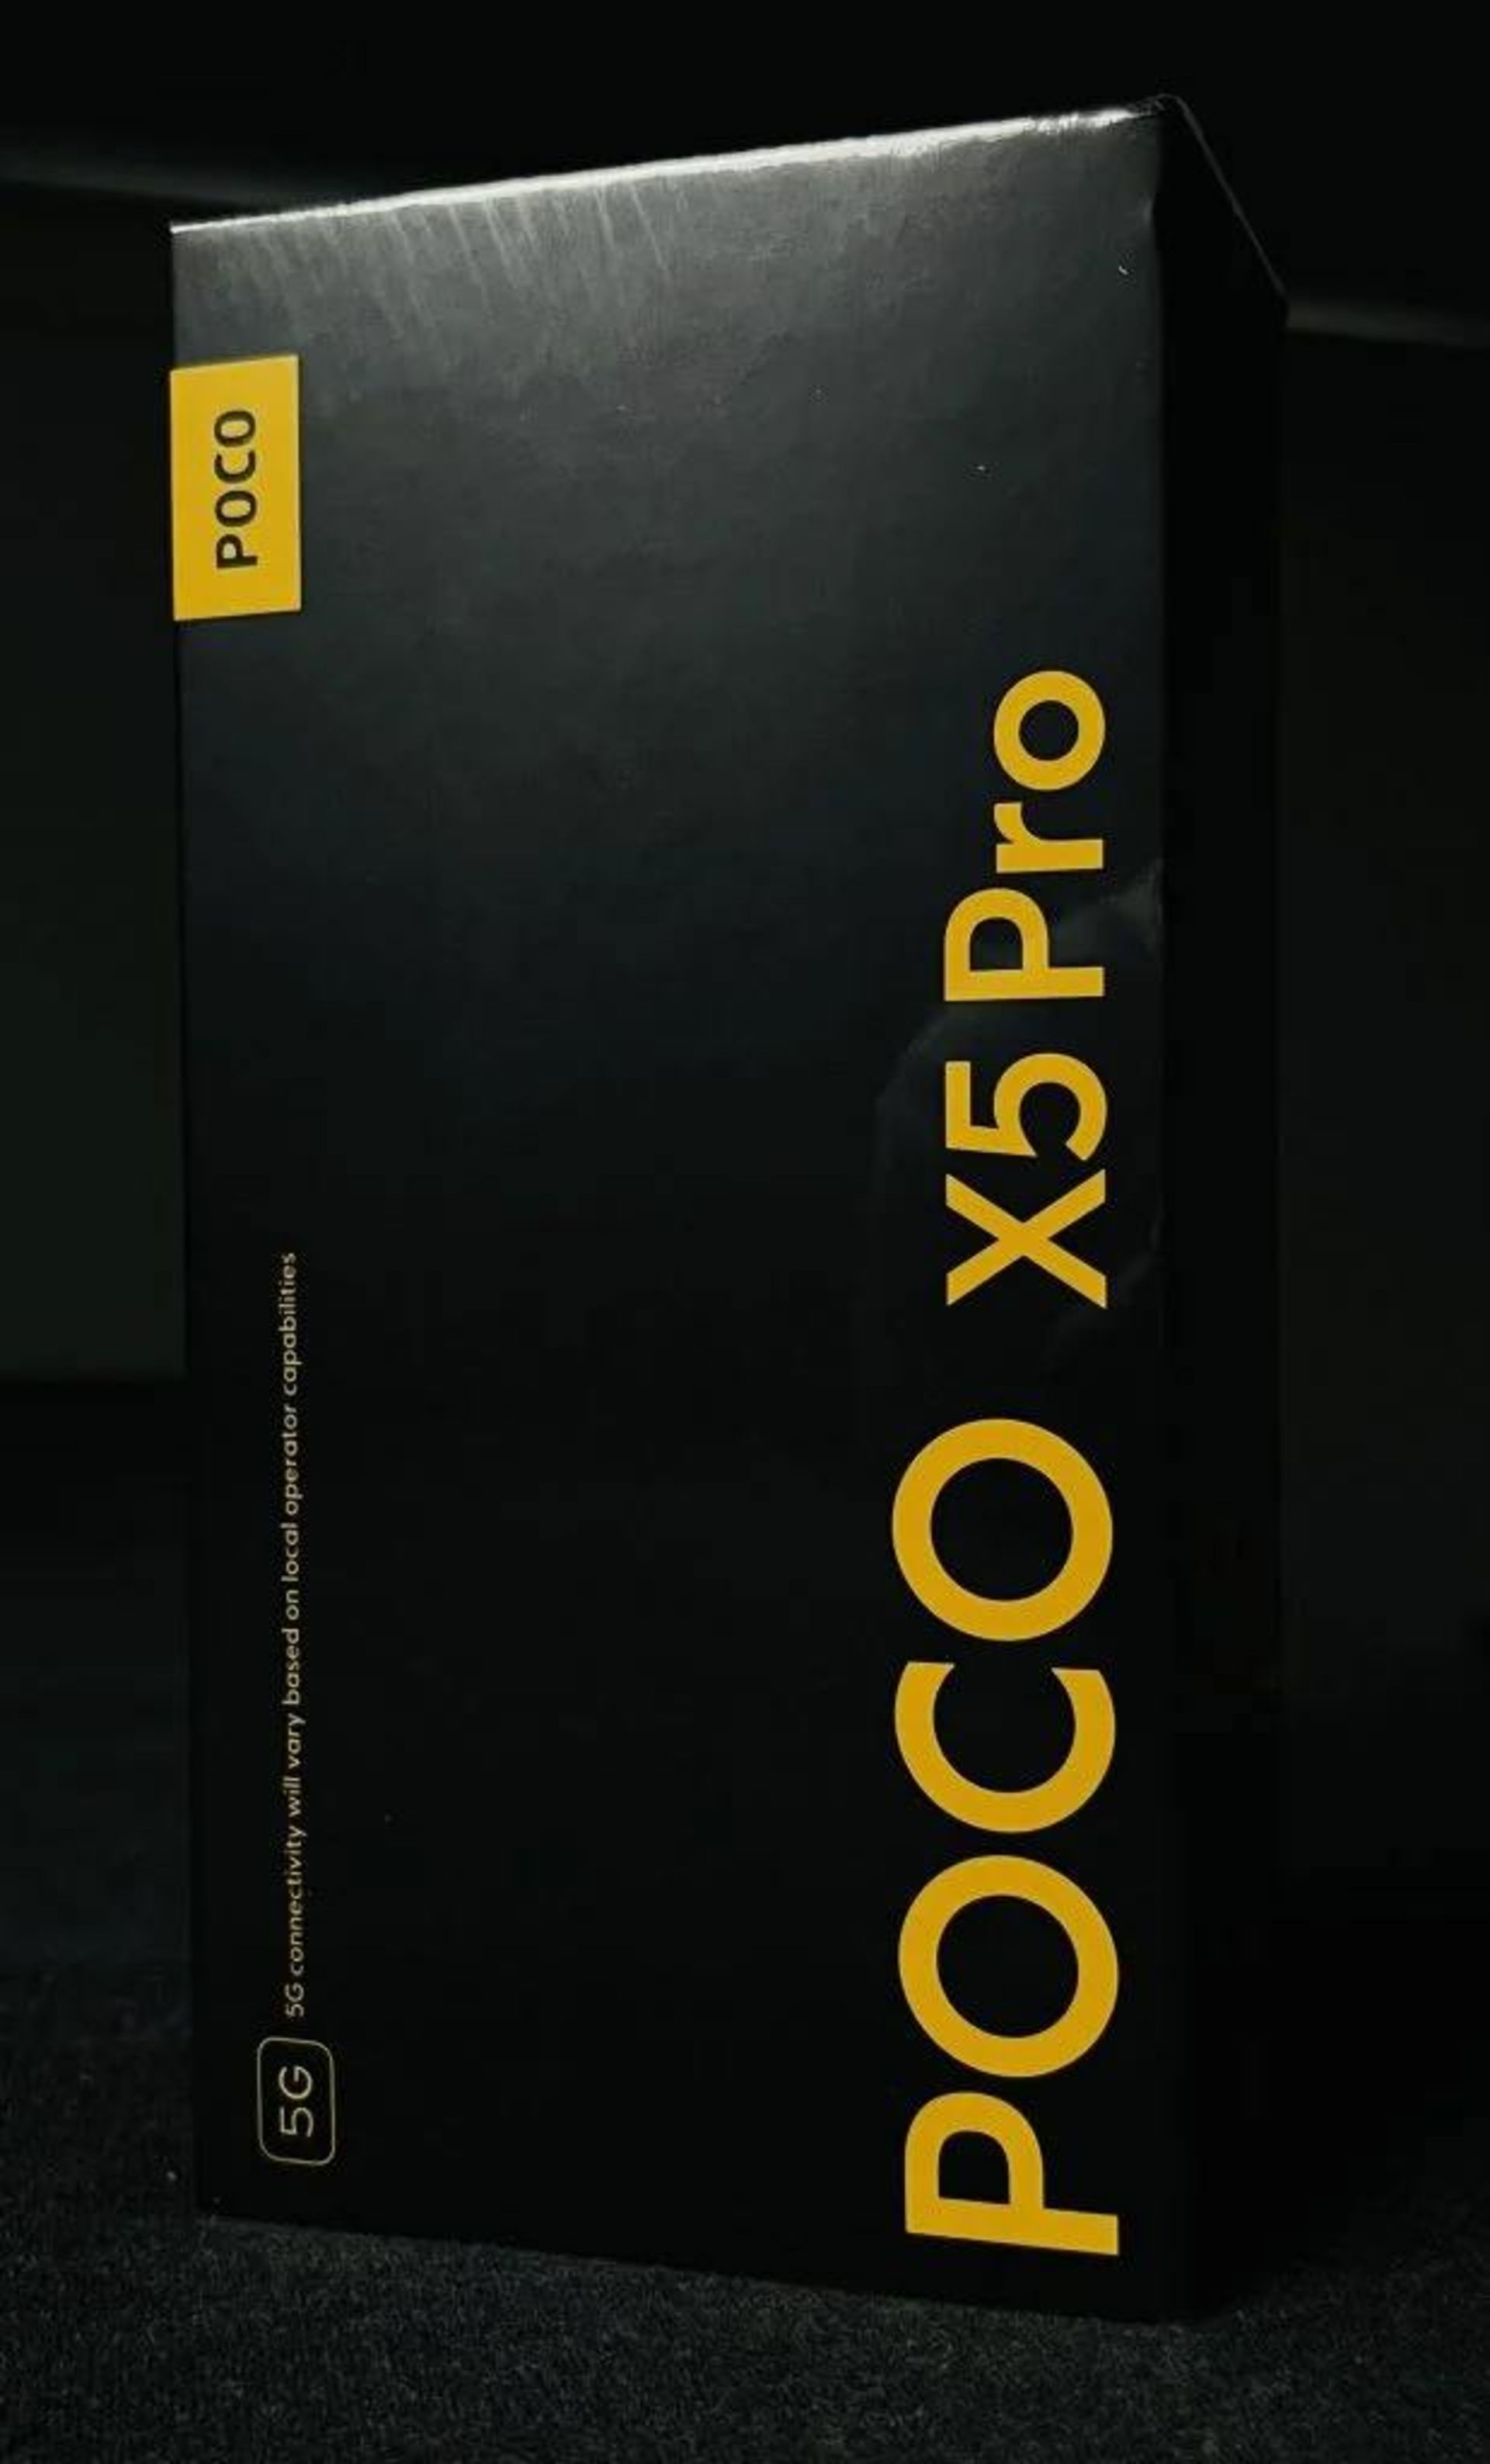 جعبه پوکو X5 Pro 5G